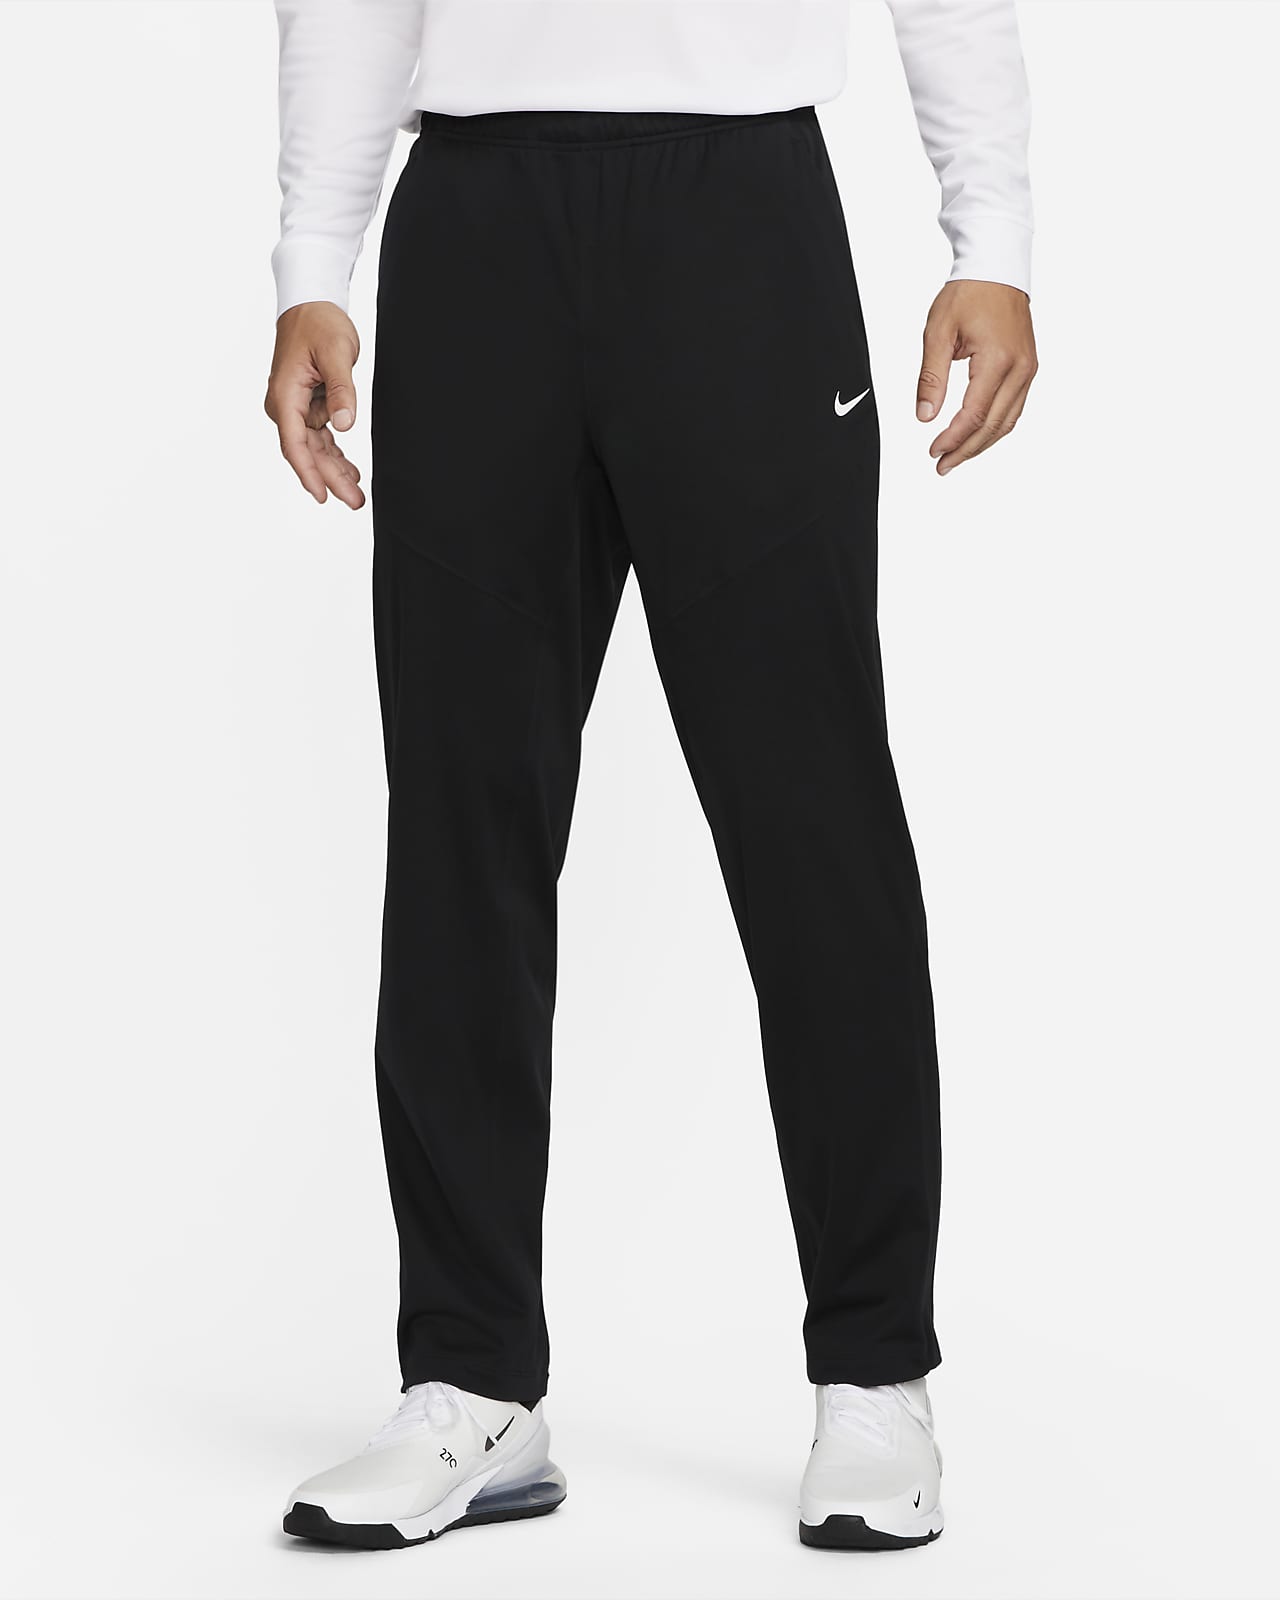 castigo Piquete escucha Pantalones de Golf para hombre Nike Storm-FIT ADV. Nike.com